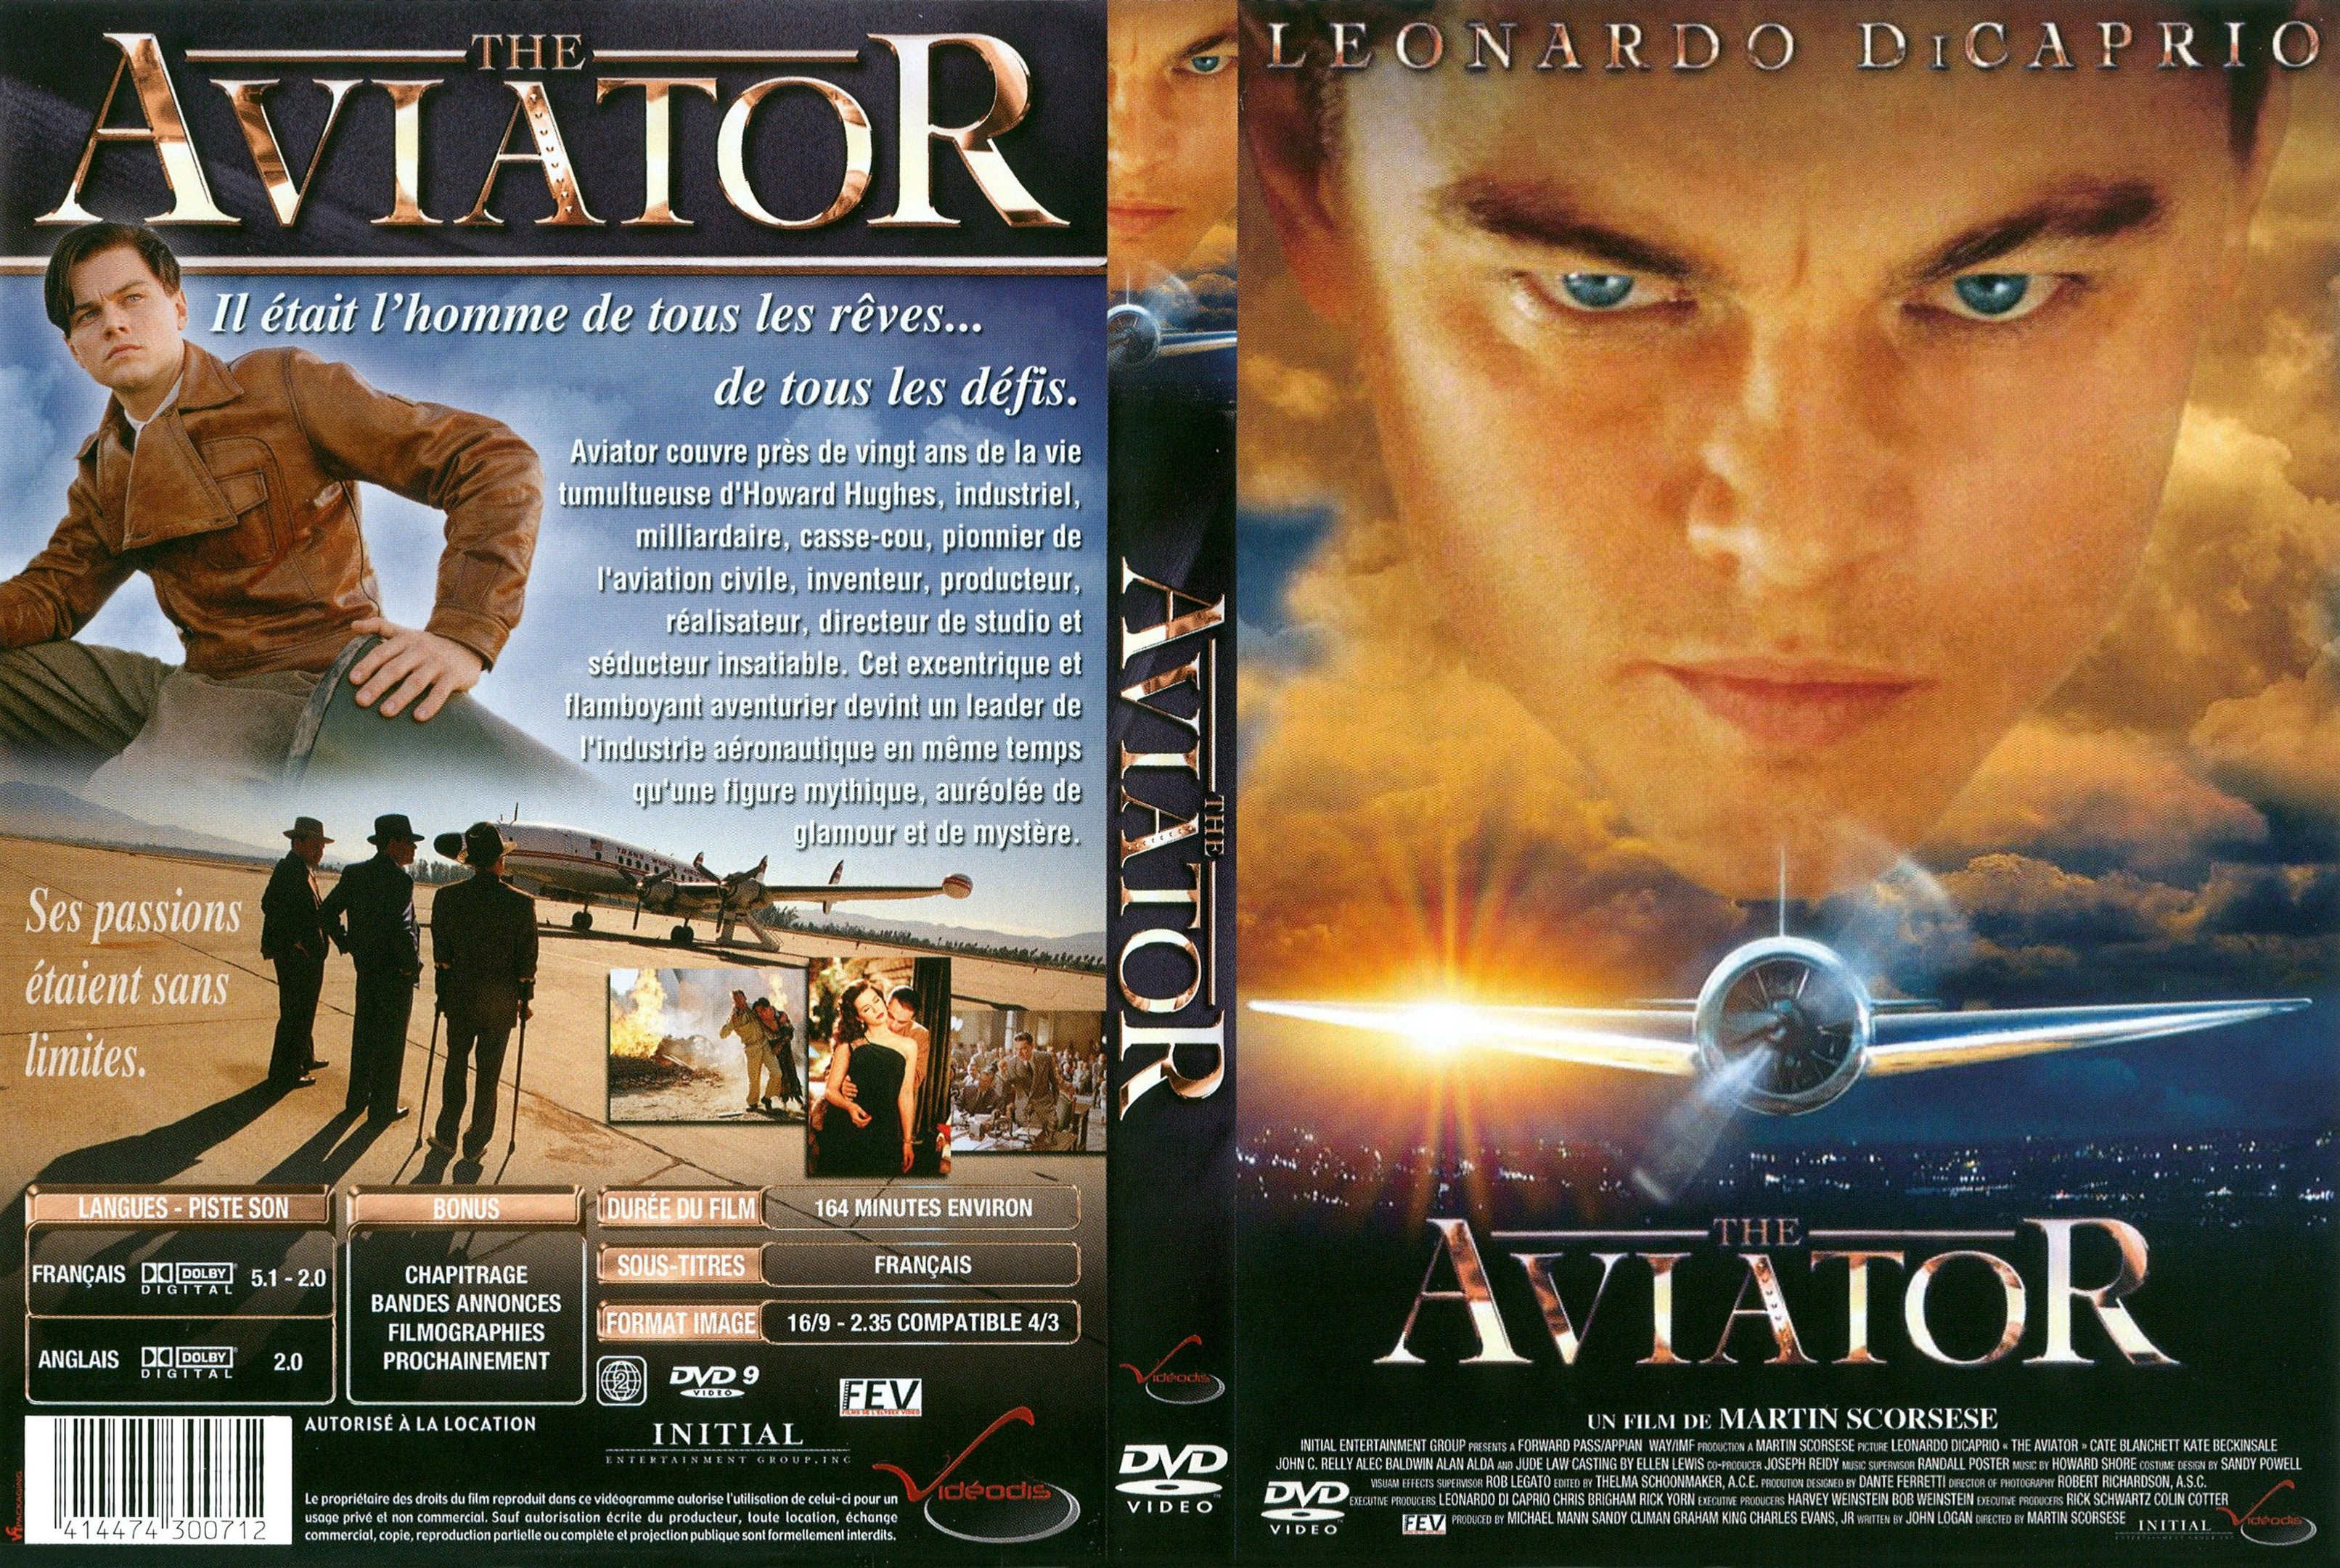 Jaquette DVD The aviator v2